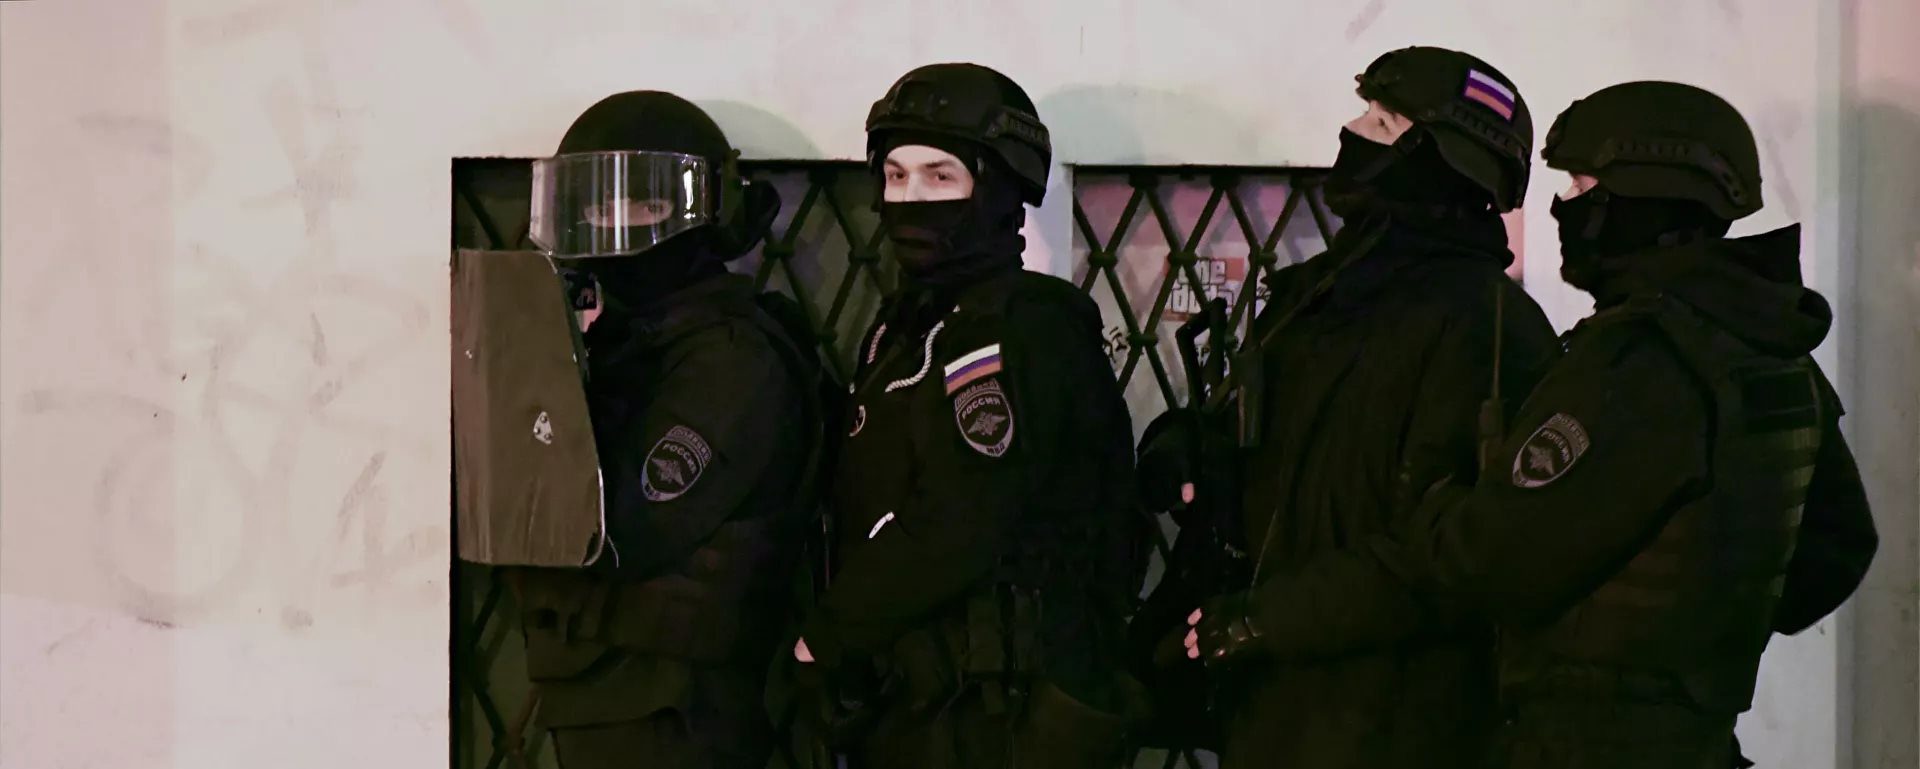 Kırım'da yakalanan Rusya'da yasaklı Hizb-ut Tahrir terör örgütünün 5 üyesinden 3'ü Kırımlı hakimlerin kararıyla tutuklandı. - ruspolisi